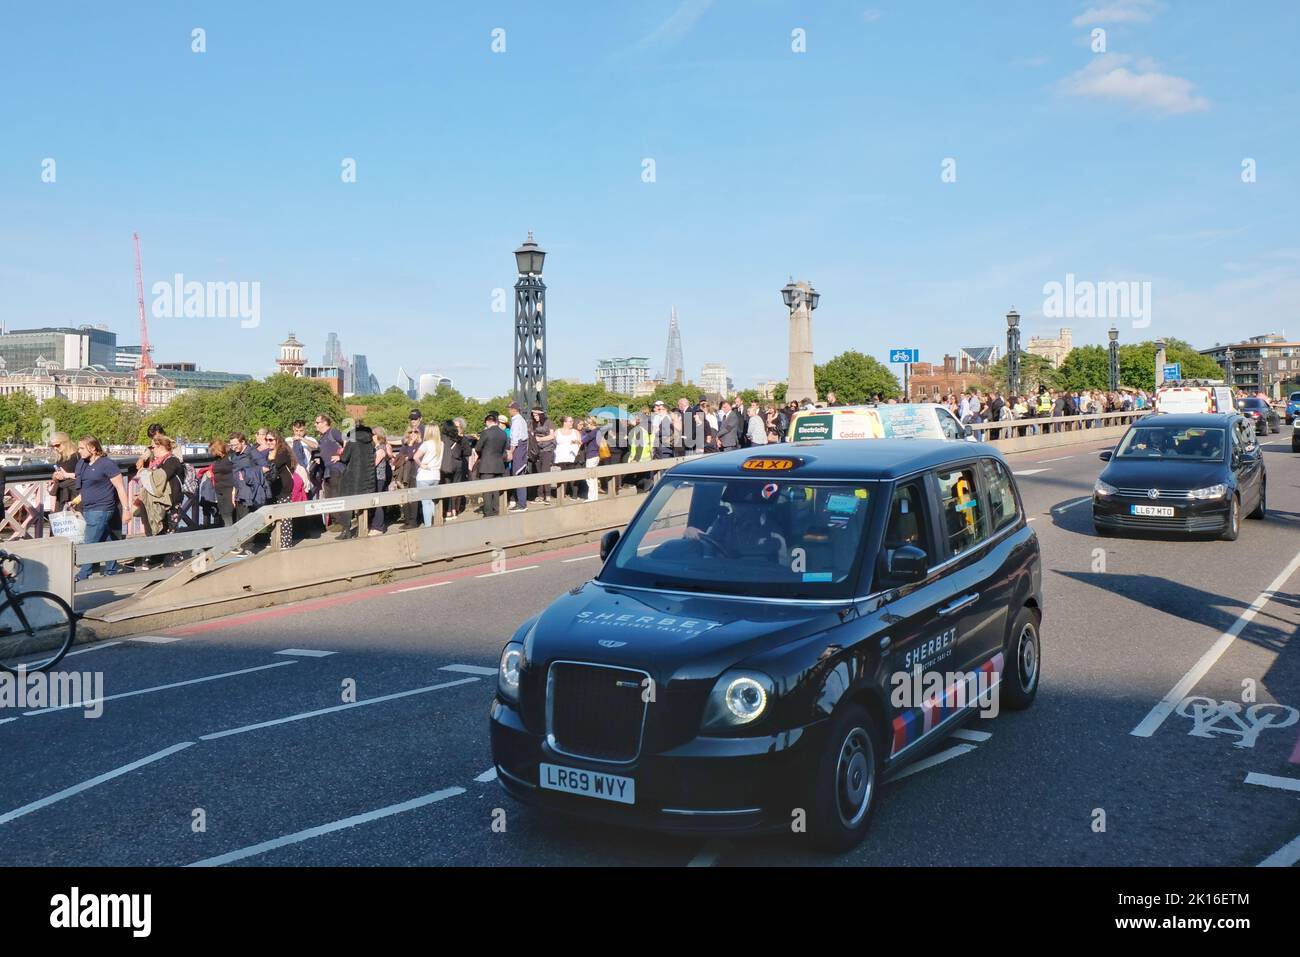 Londra, Regno Unito. I pianatori si accodano sul Lambeth Bridge per rendere omaggio alla Regina mentre si trova in stato per quattro giorni prima del suo funerale. Foto Stock